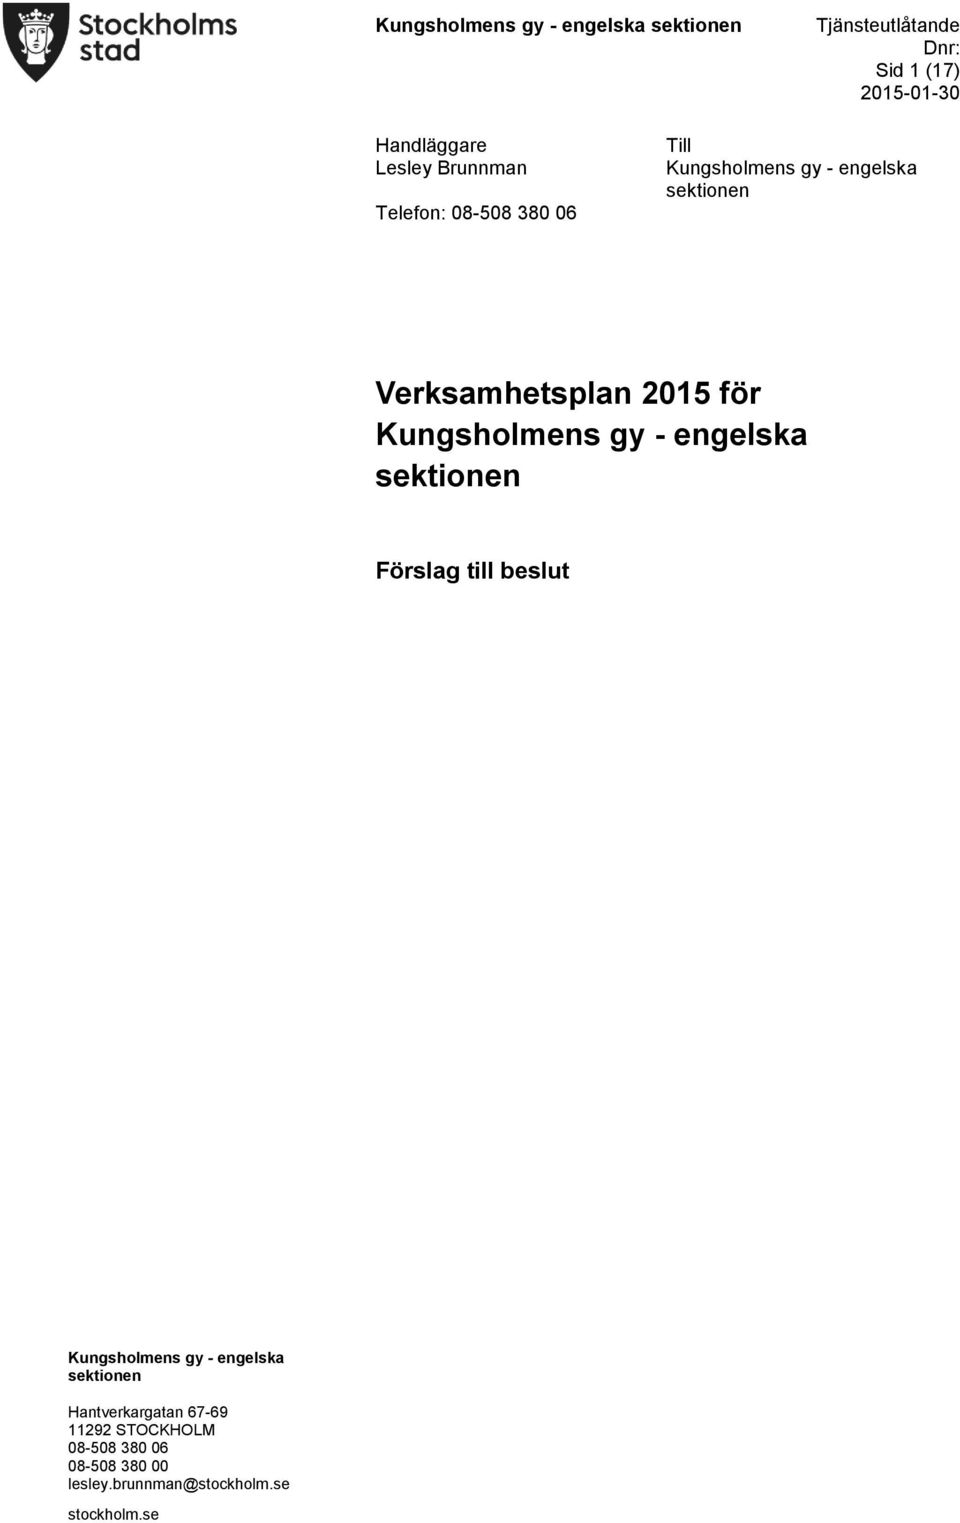 Verksamhetsplan 2015 för Kungsholmens gy - engelska sektionen Förslag till beslut